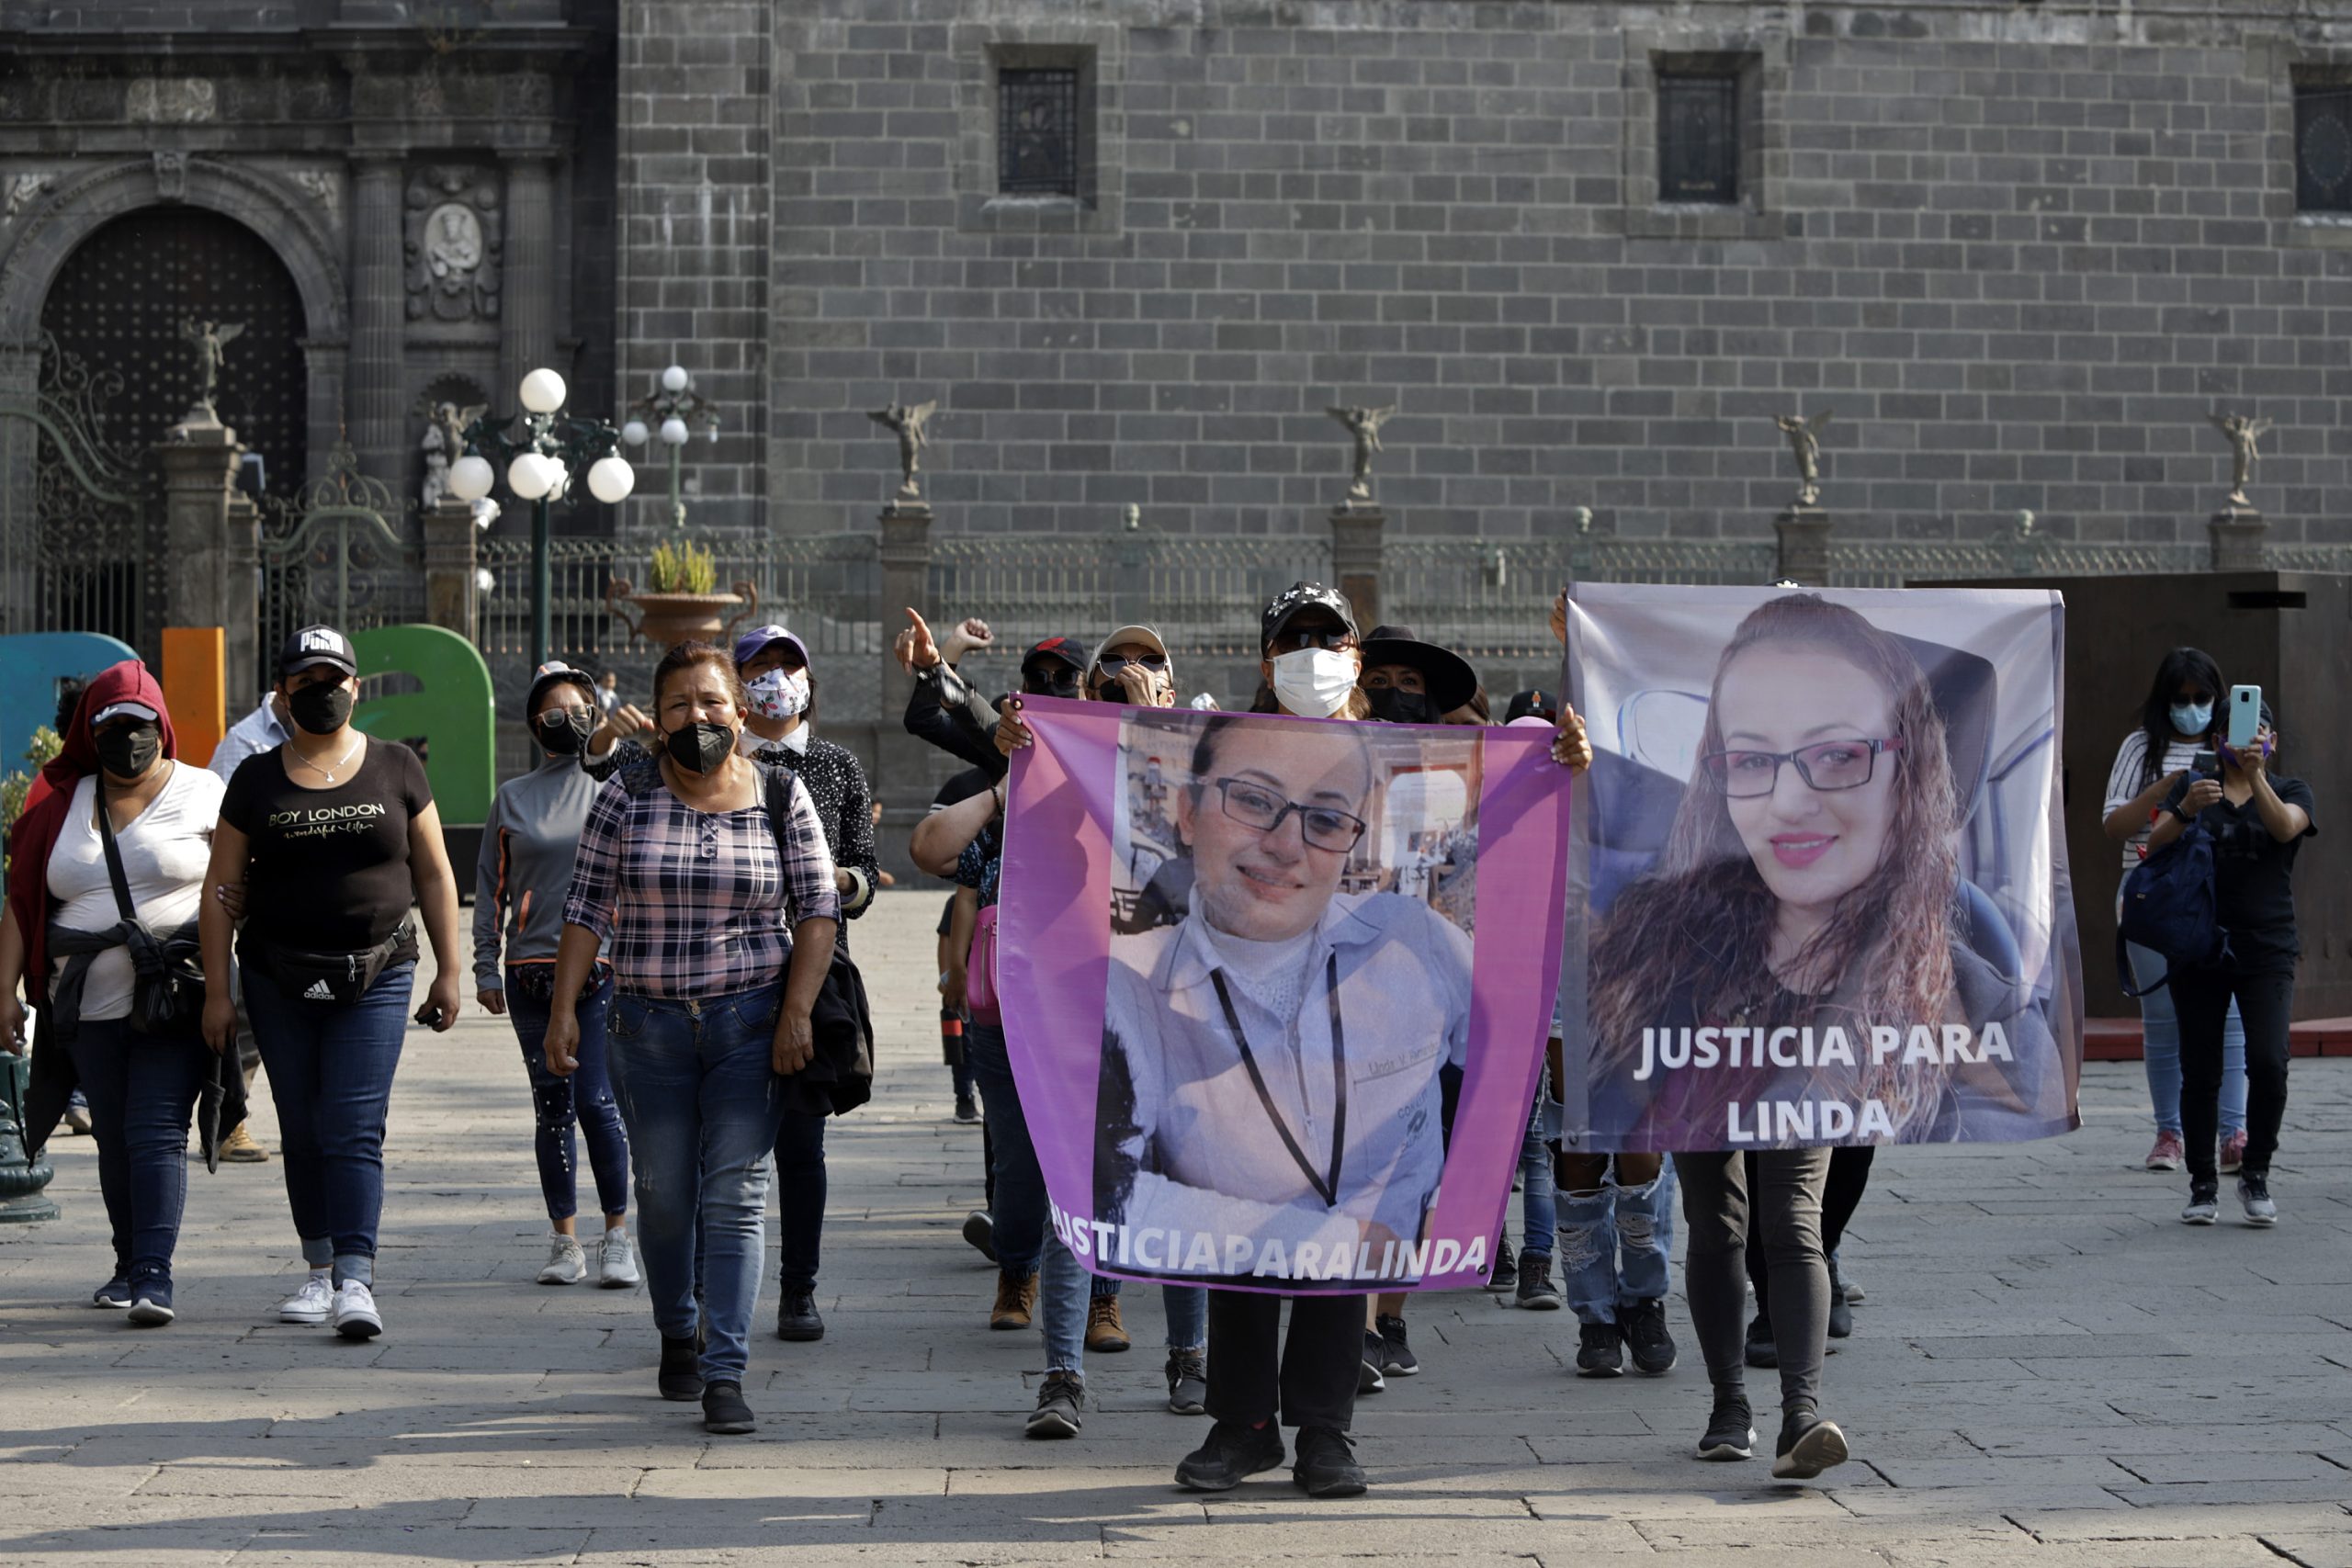 Familiares de Linda protestan en zócalo por anomalías en investigación de su feminicidio